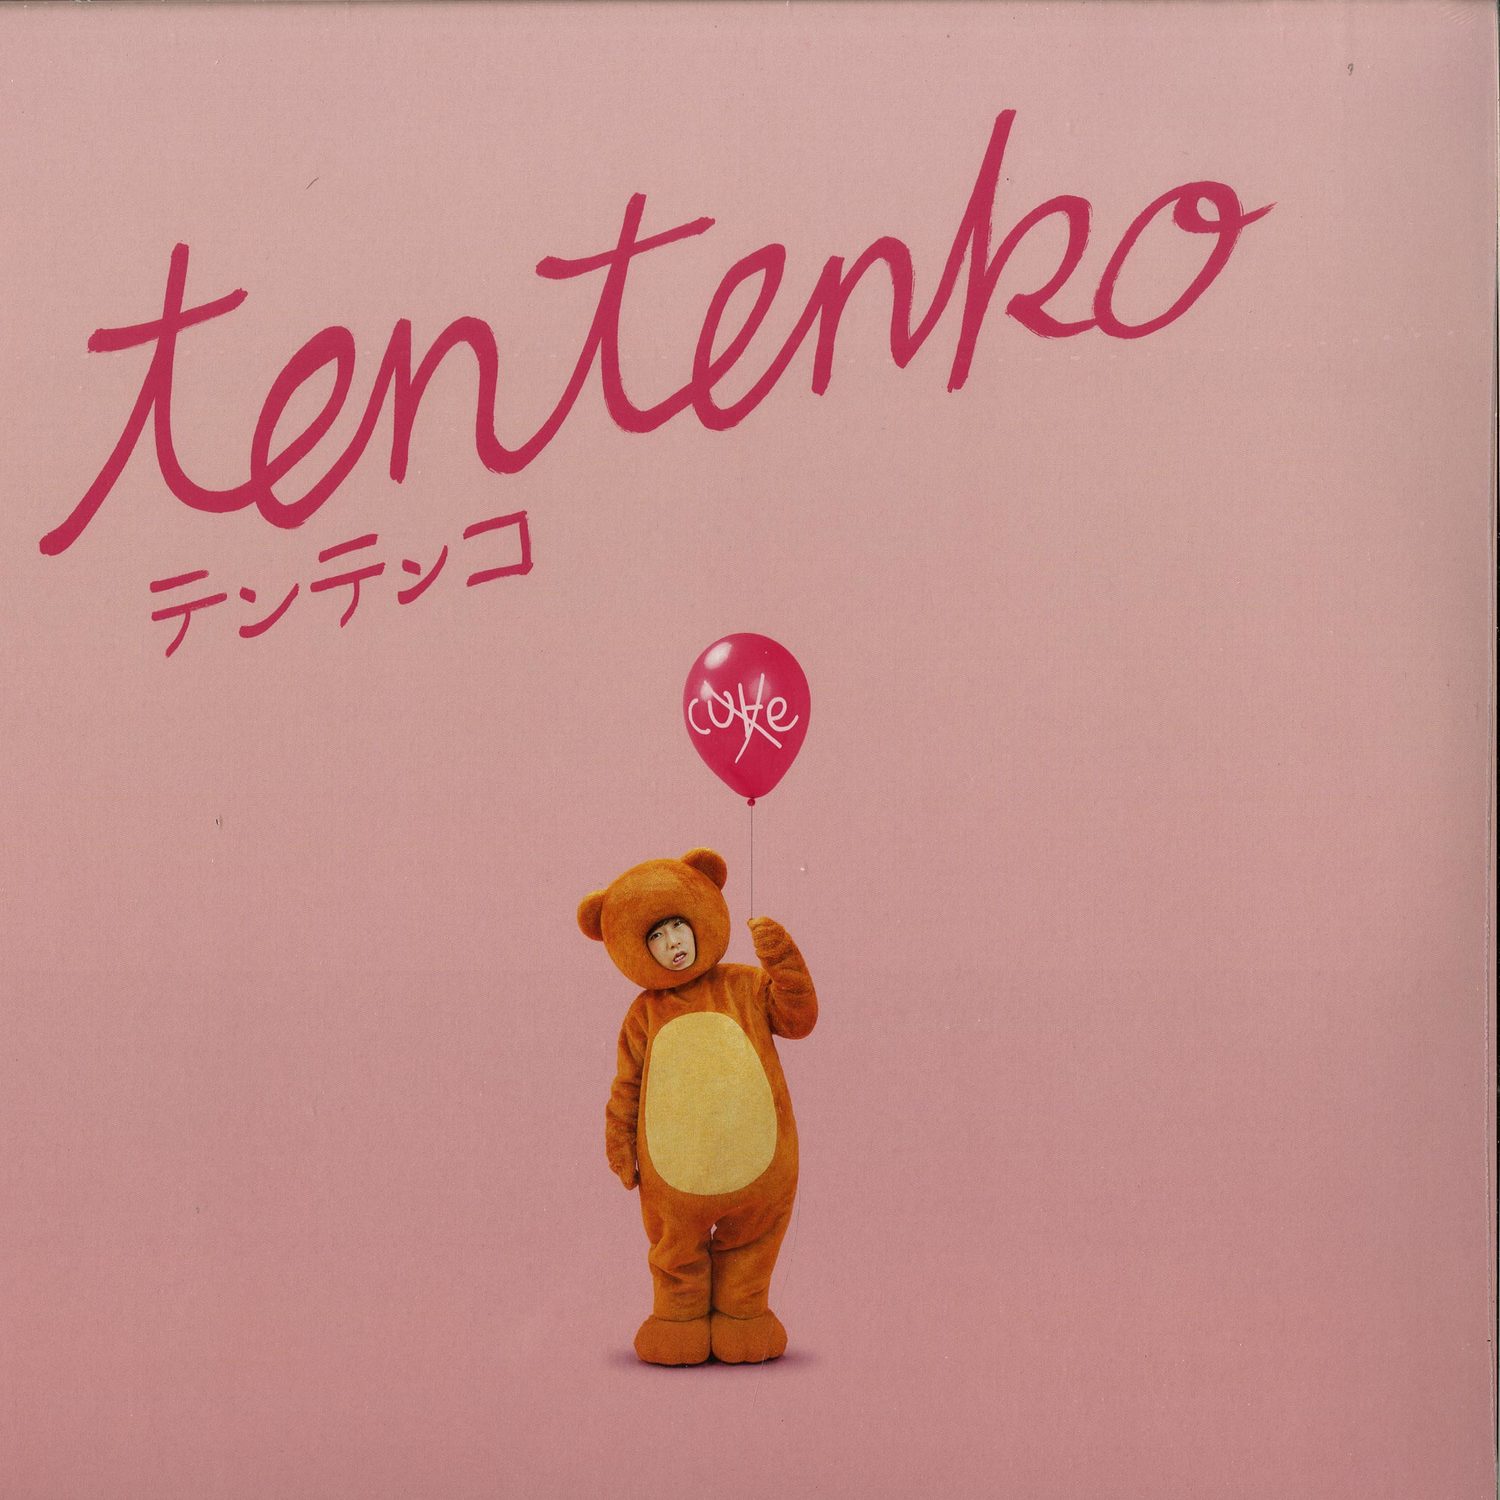 Tentenko - TENTENKO 